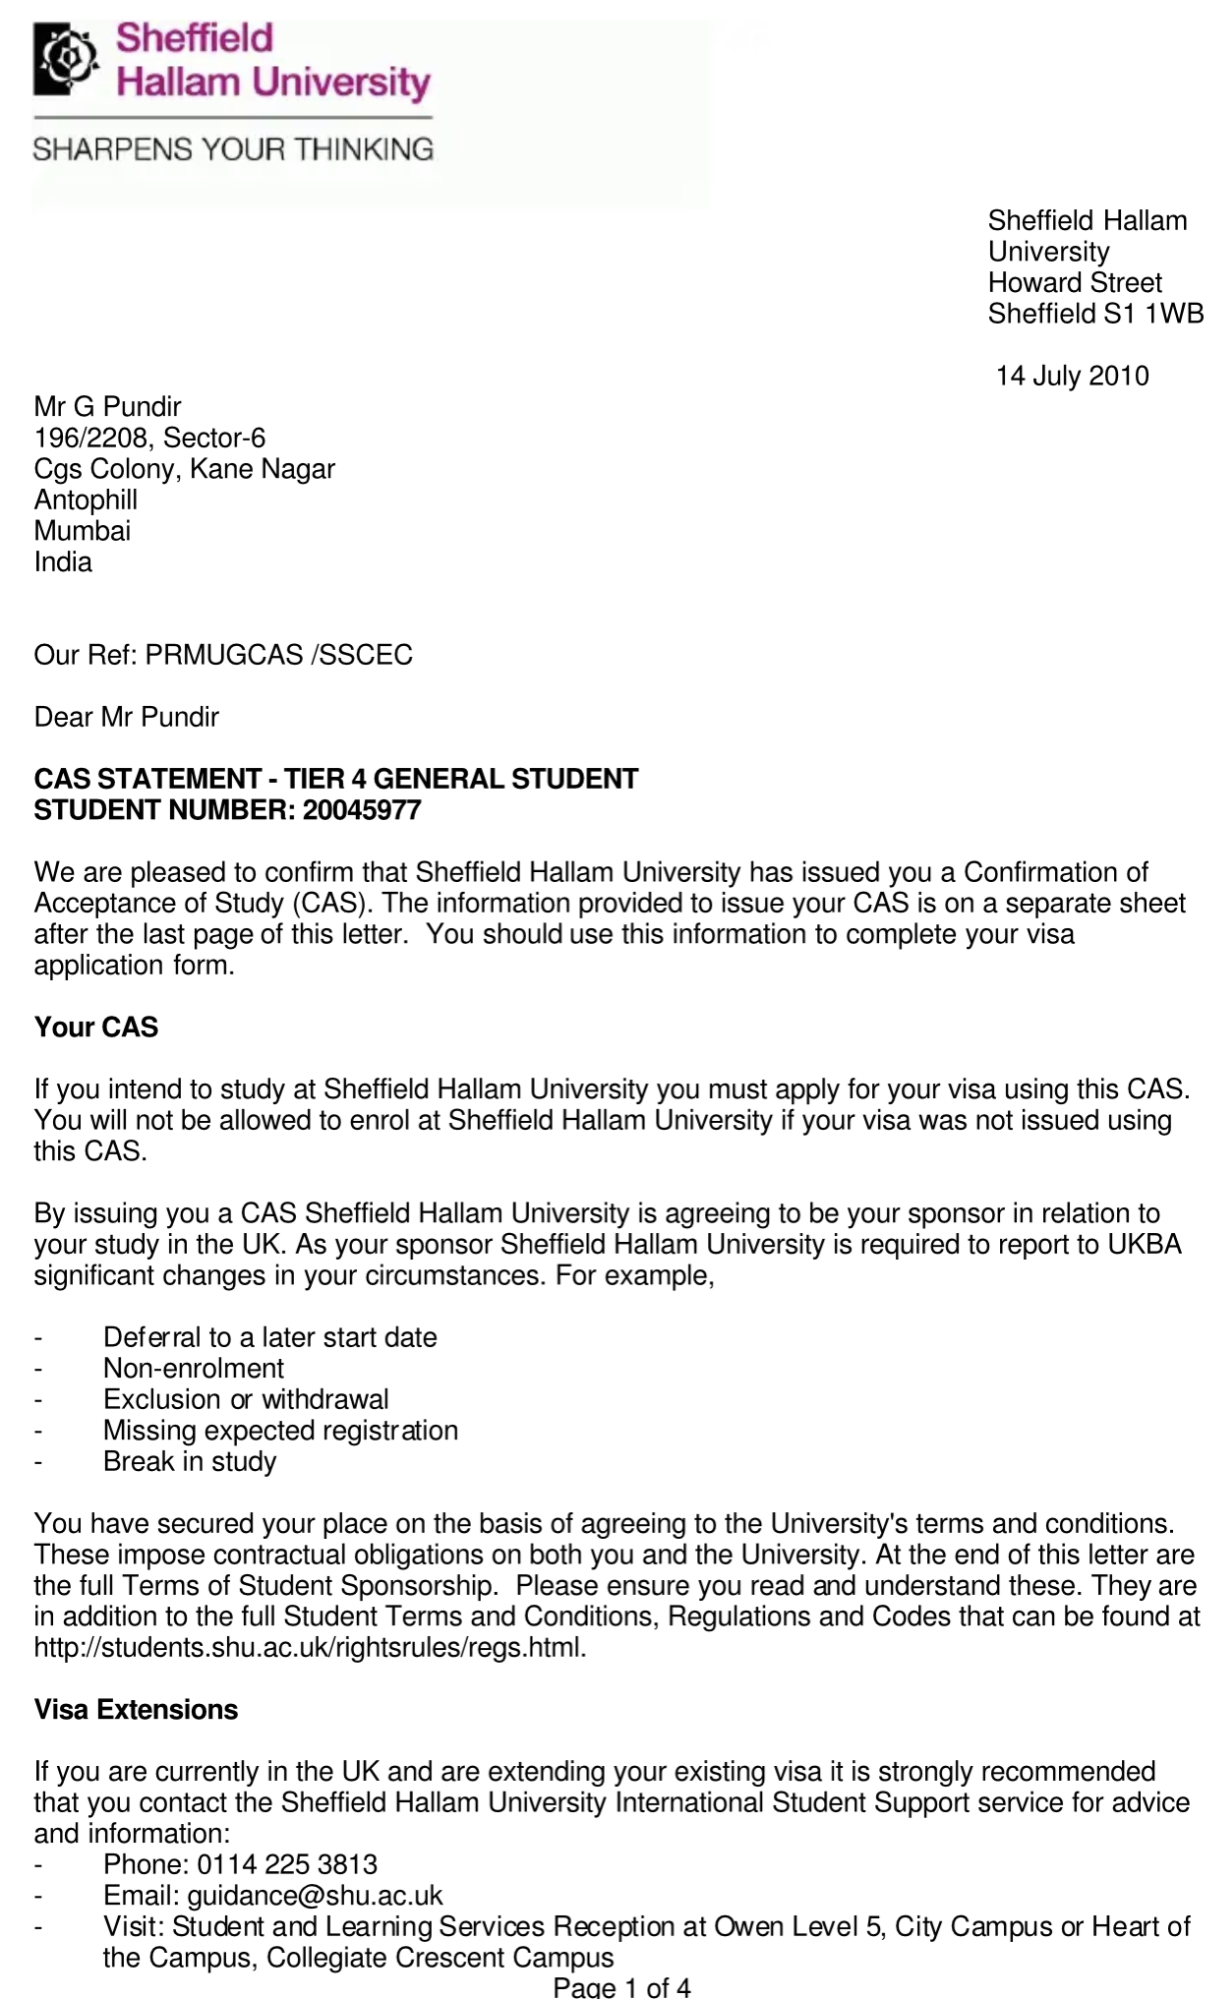 CAS letter UK sample